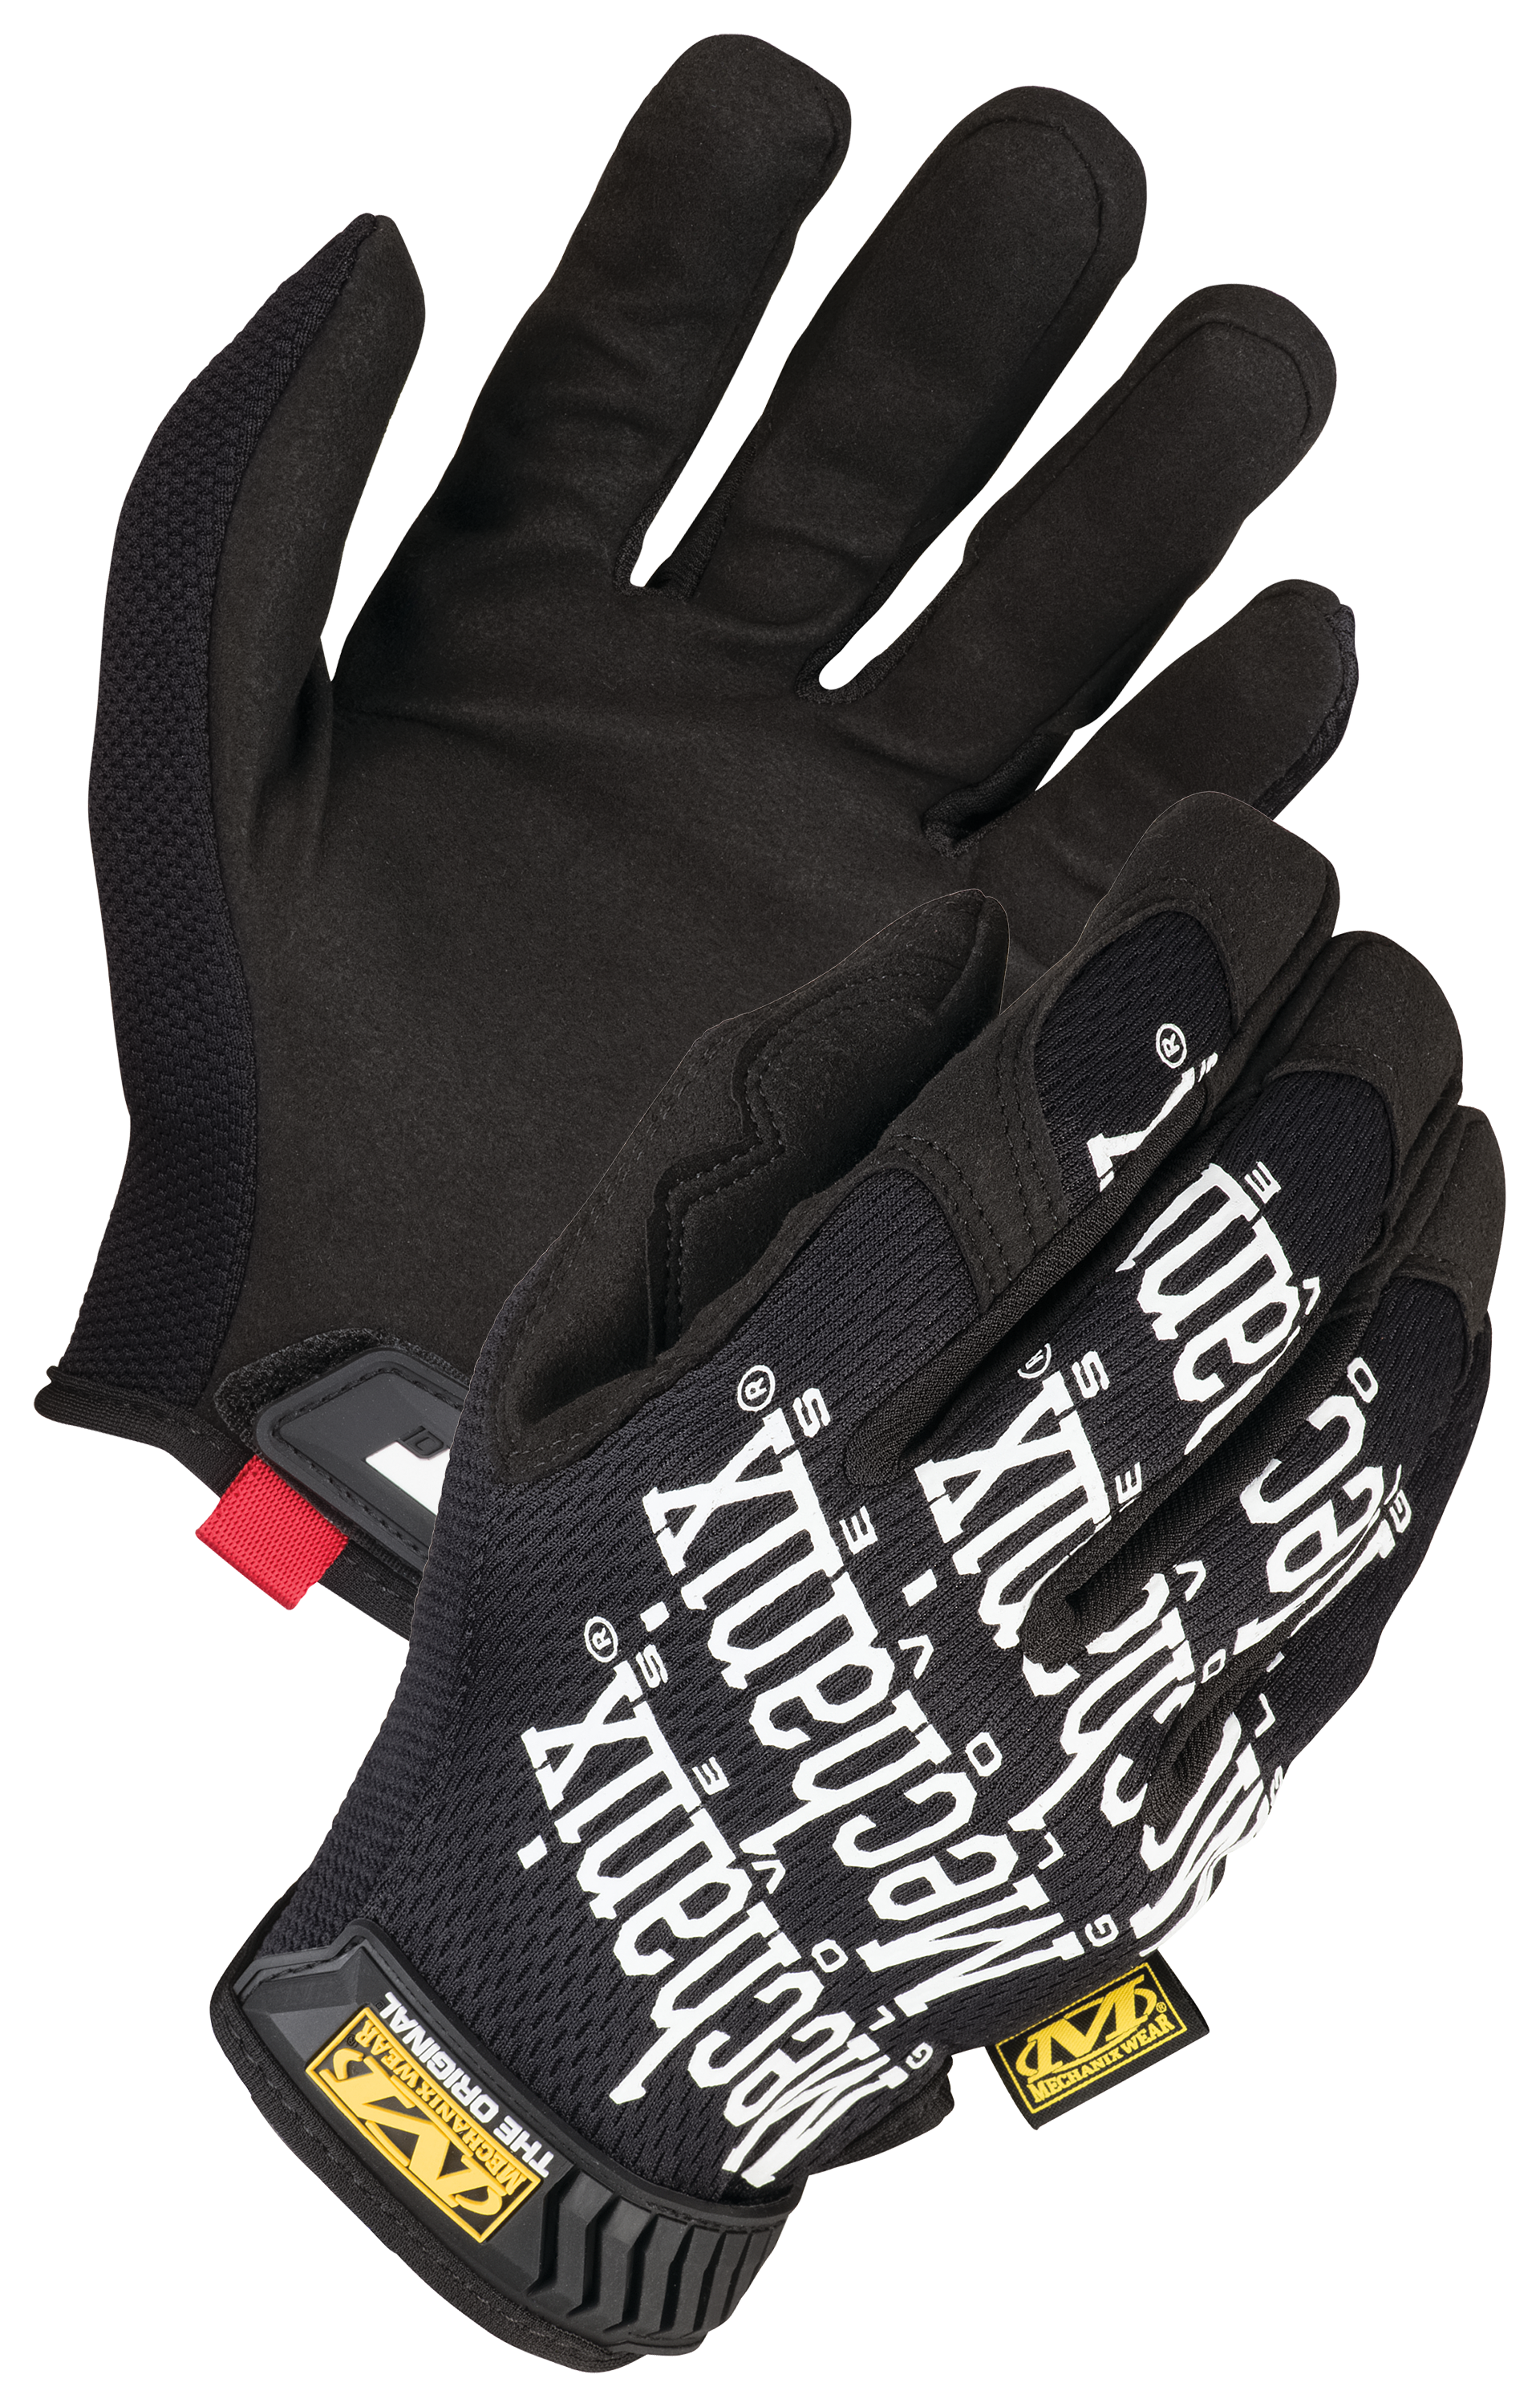 Mechanix The Original Gloves for Men